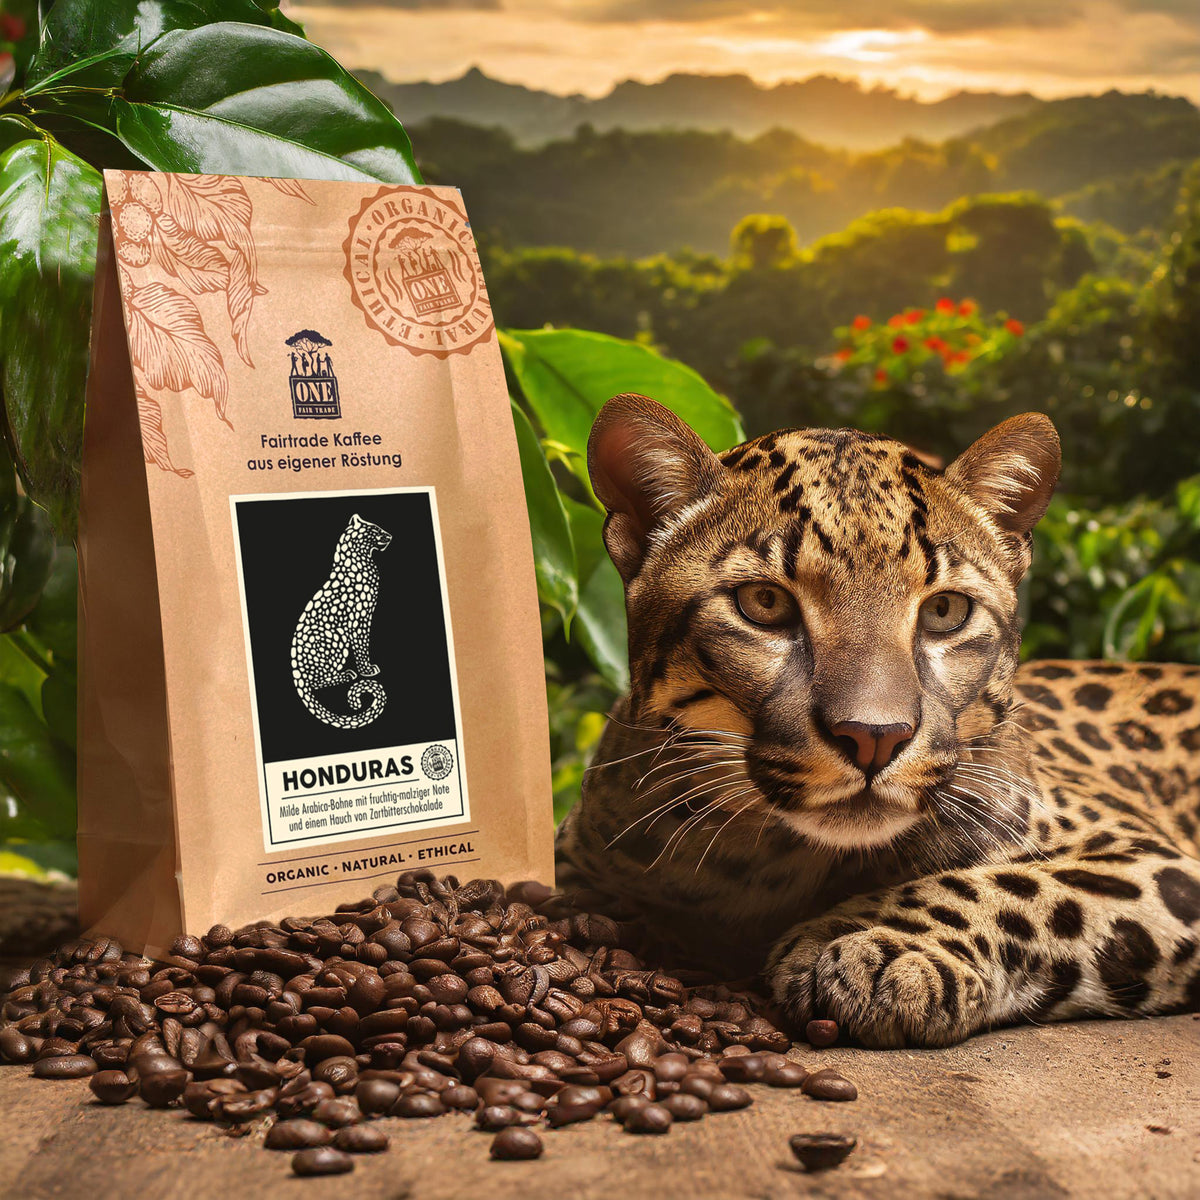 Honduras Kaffee Tüte mit fairtrade Kaffeebohnen und Leopard als Dekoration. Der Hintergrund sind verschwommene Wälder.